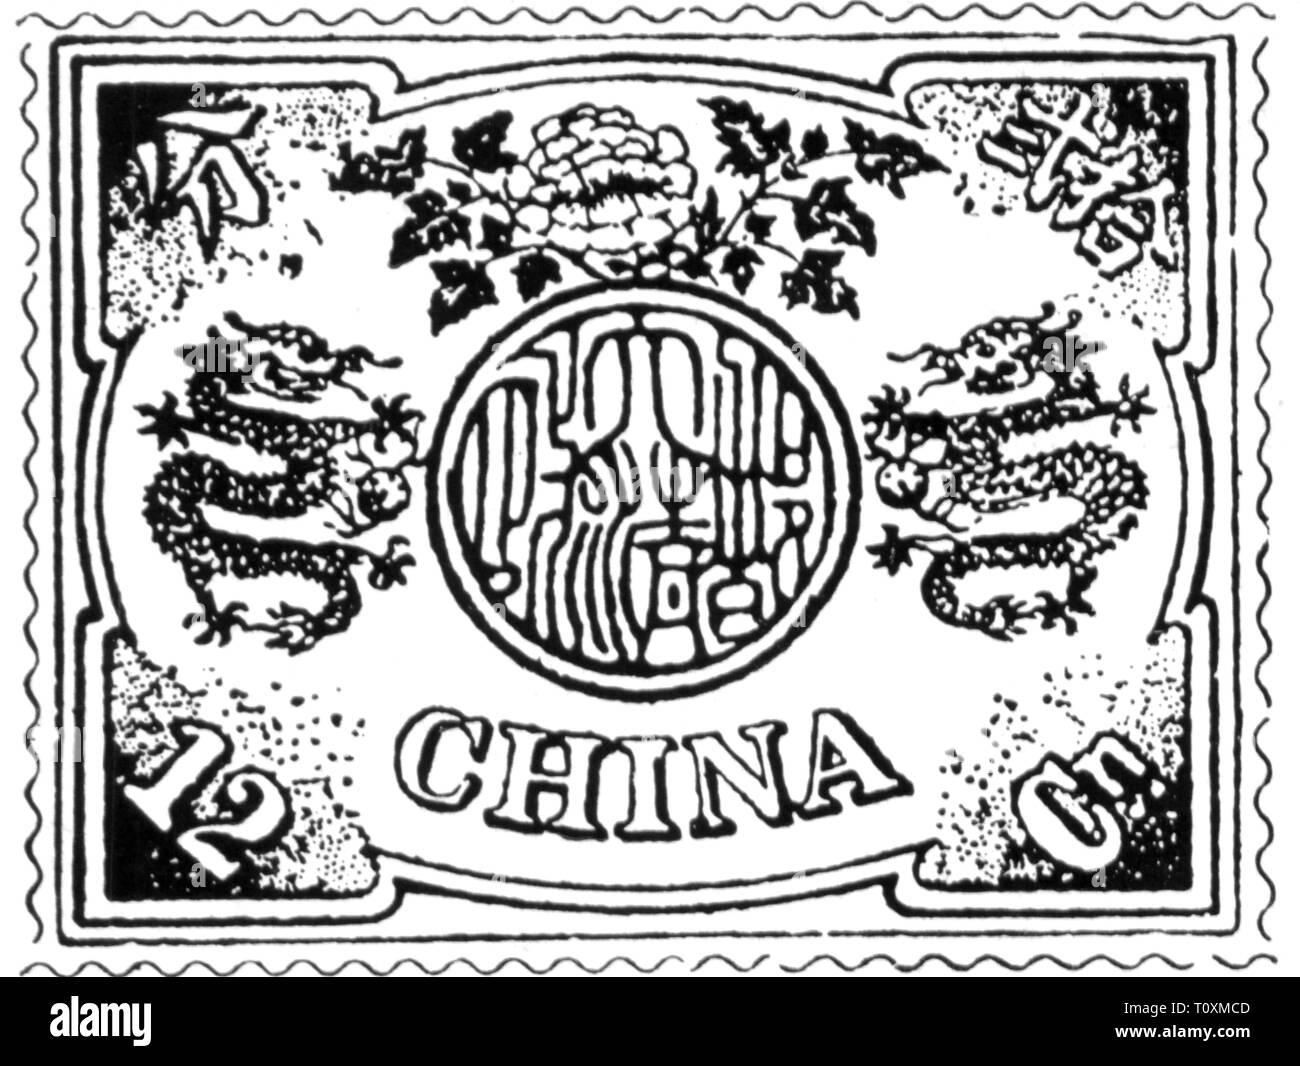 Sellos chinos fotografías e imágenes de alta resolución Alamy